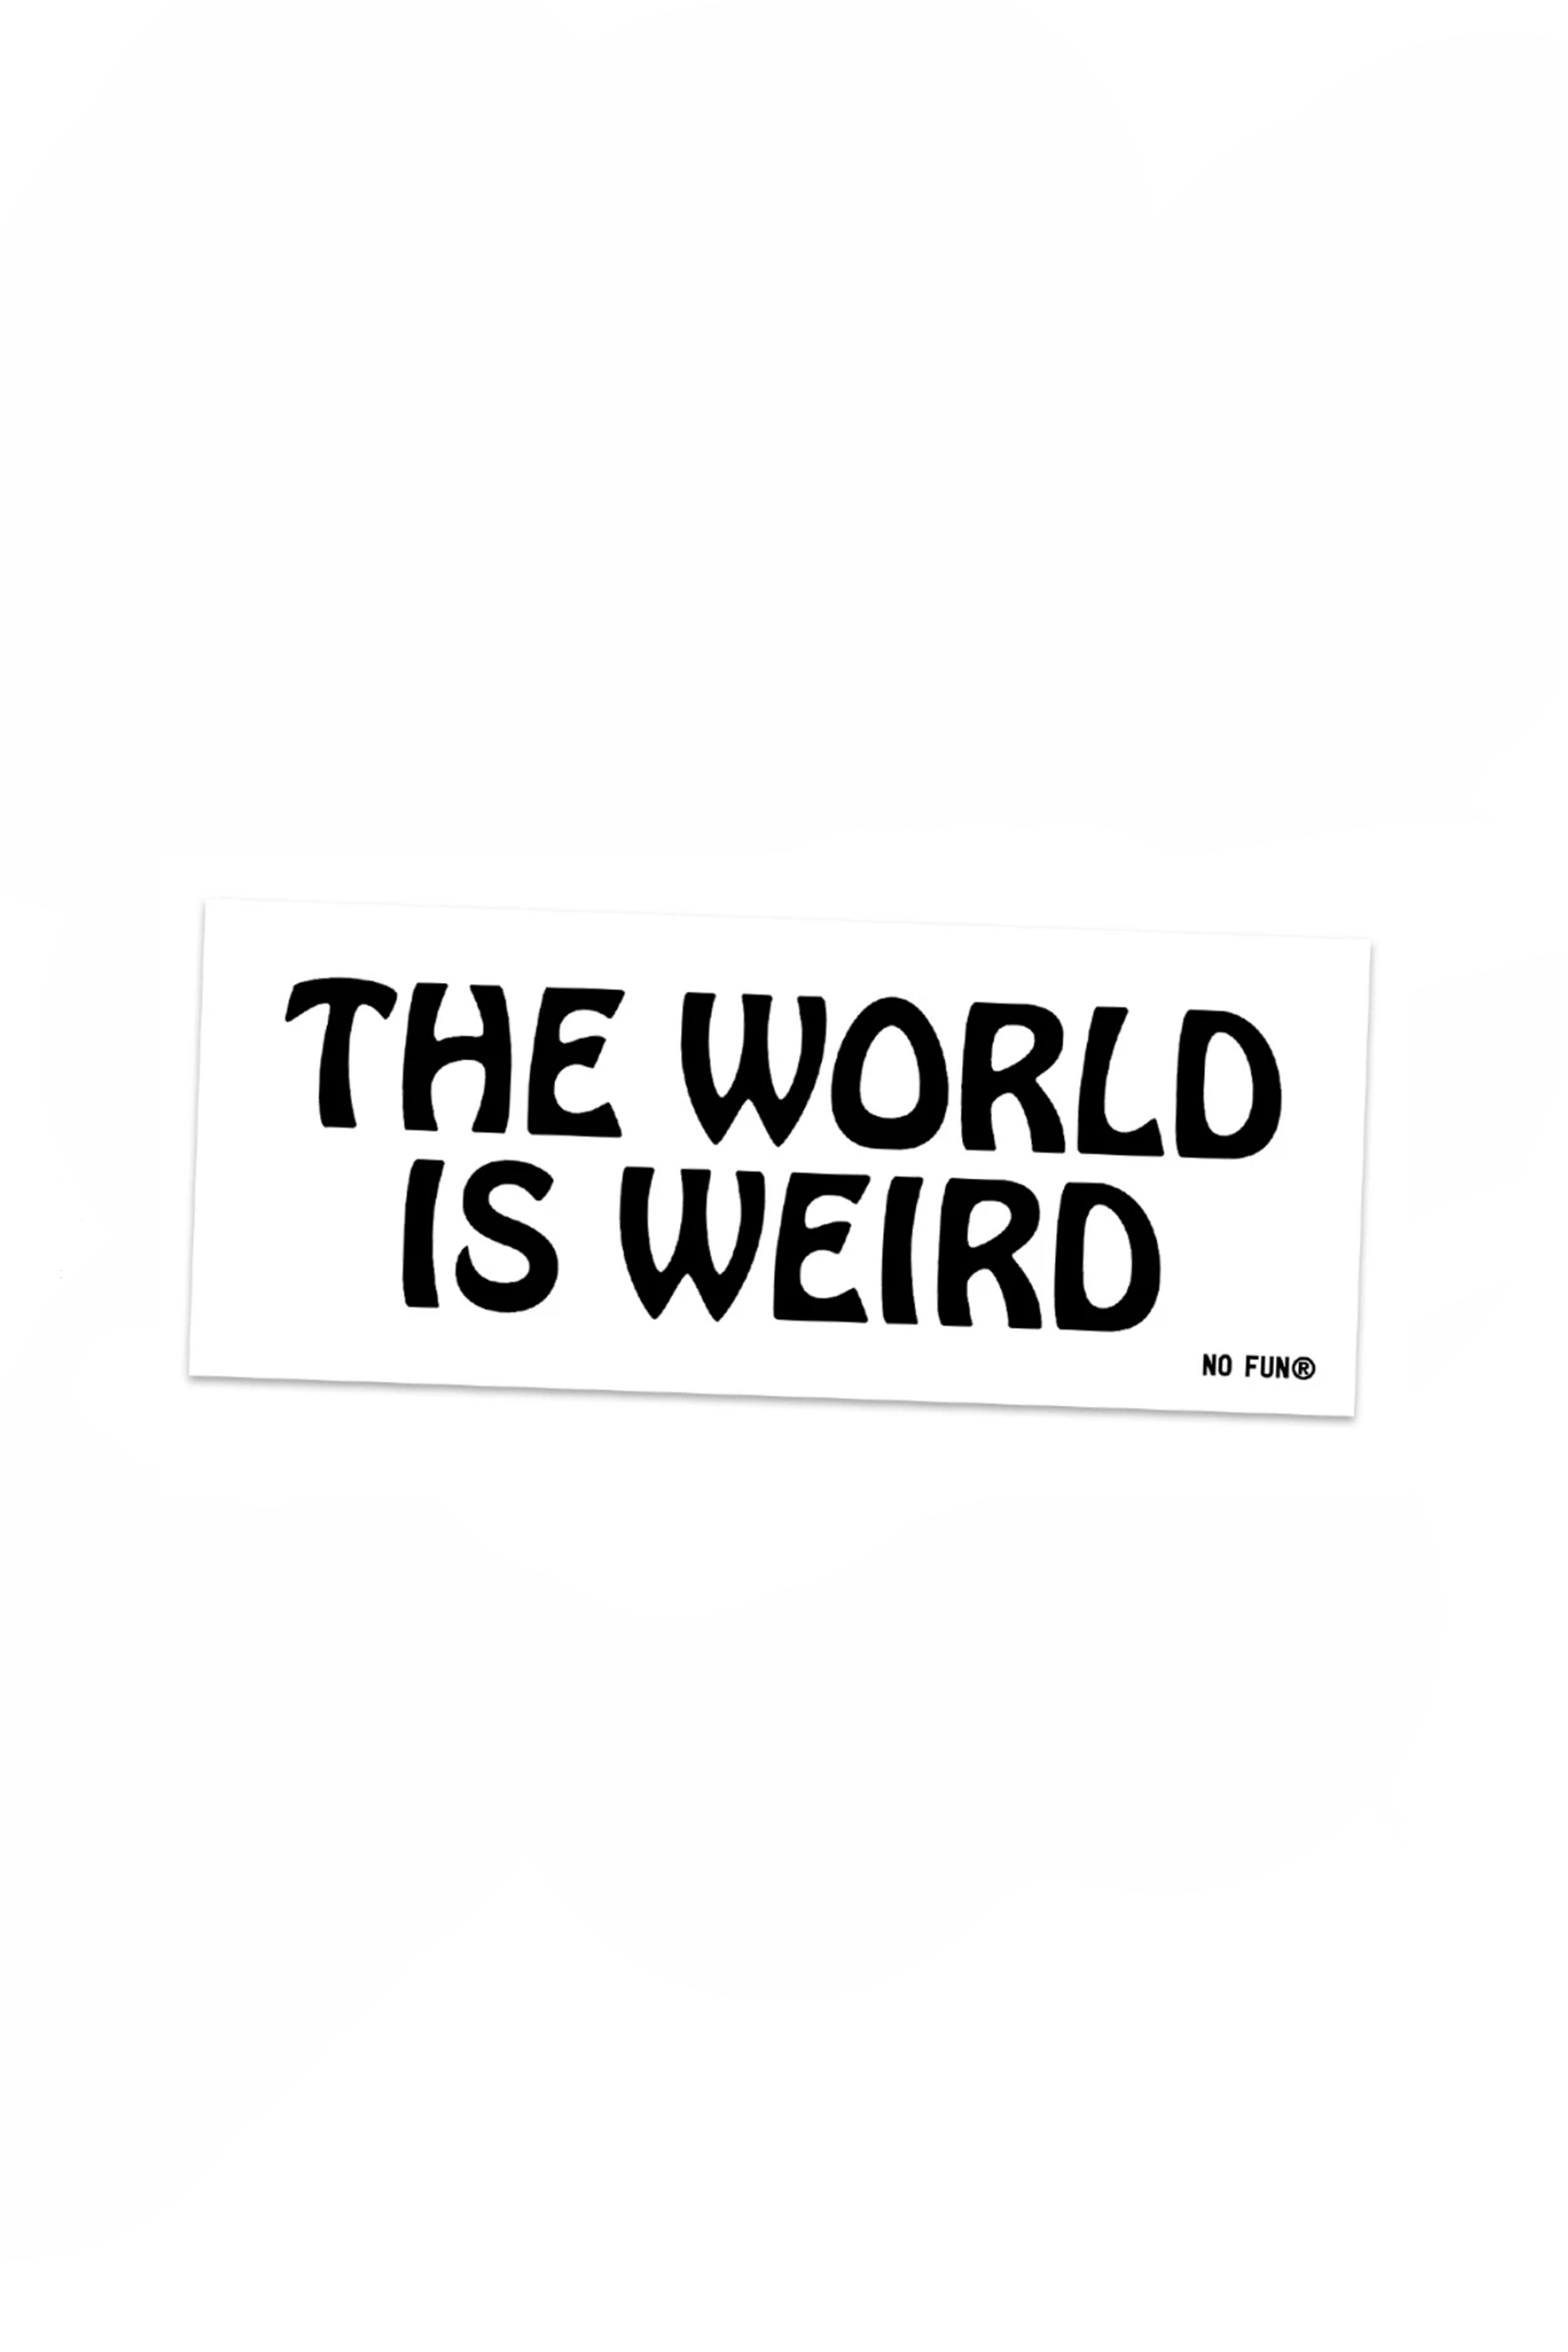 The World is Weird Bumper Sticker